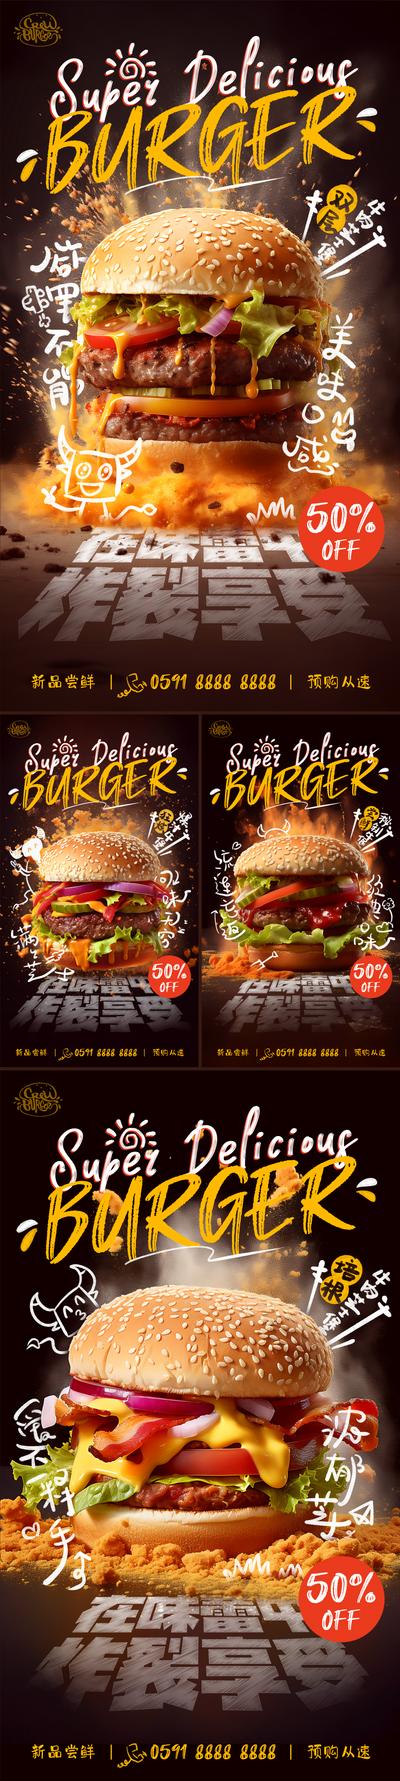 南门网 广告 海报 美食 汉堡 创意 系列 牛 味蕾 炸裂 折扣 优惠 手写字 新品 产品 牛肉 芝士 炸鸡 系列 大气 冲击